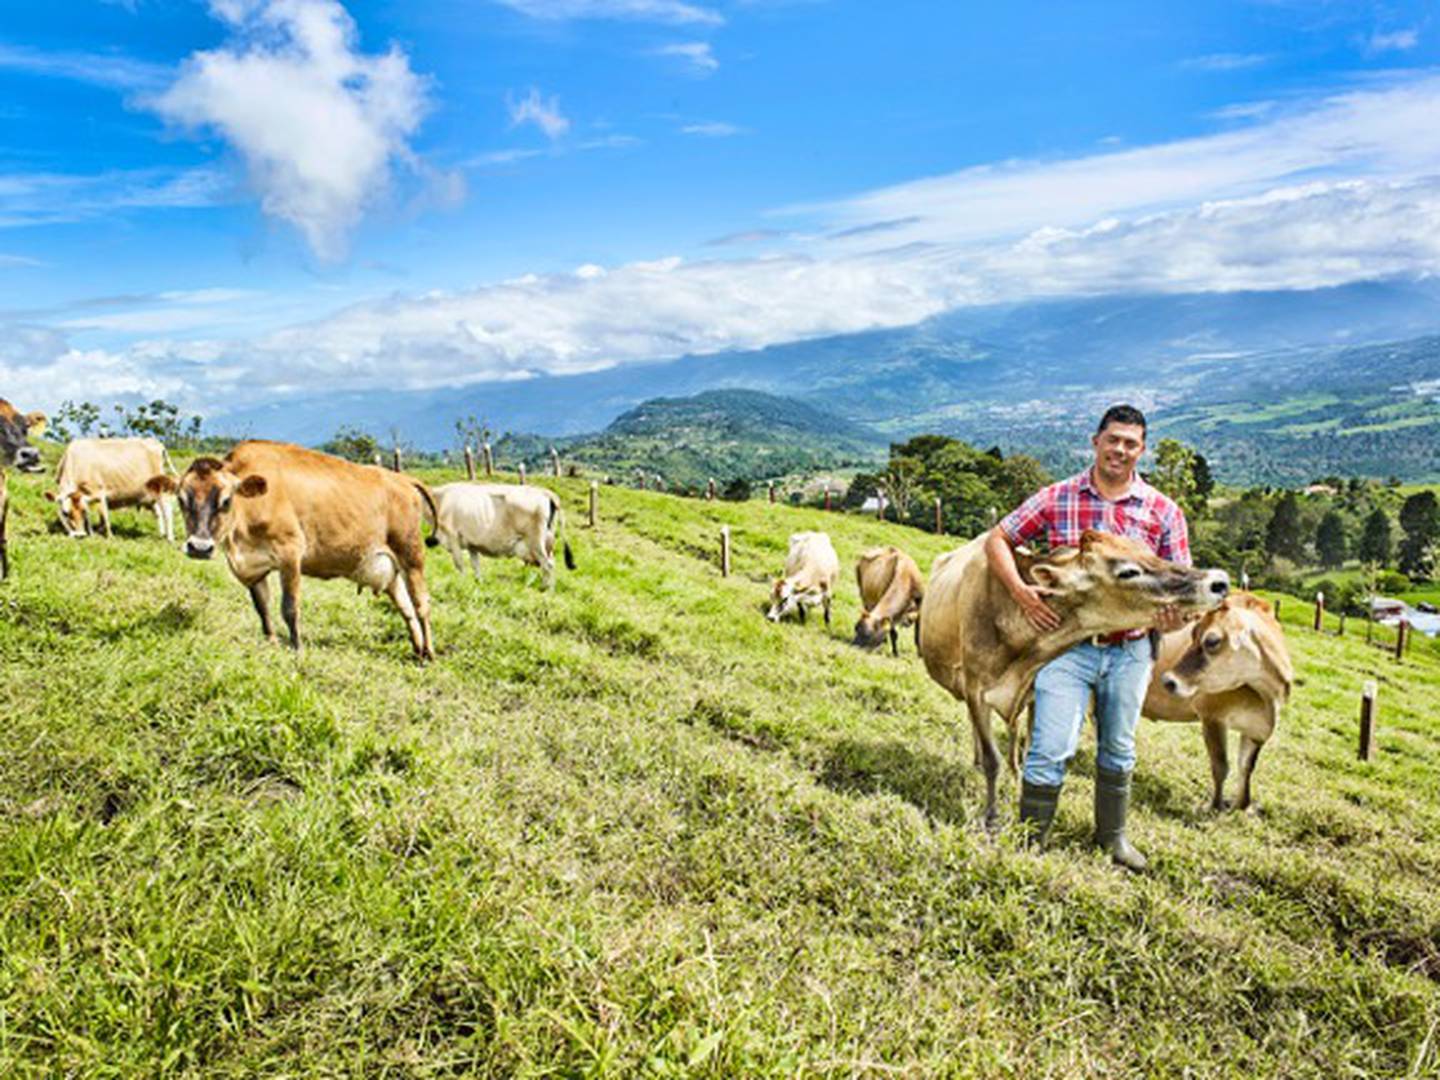 Los pequeños productores de Santa Cruz deben cumplir con una gran cantidad de requisitos para que su queso Turrialba obtenga la denominación de origen. Ellos tienen un promedio de entre 8 y 12 vacas. Foto: Arturo López/cortesía